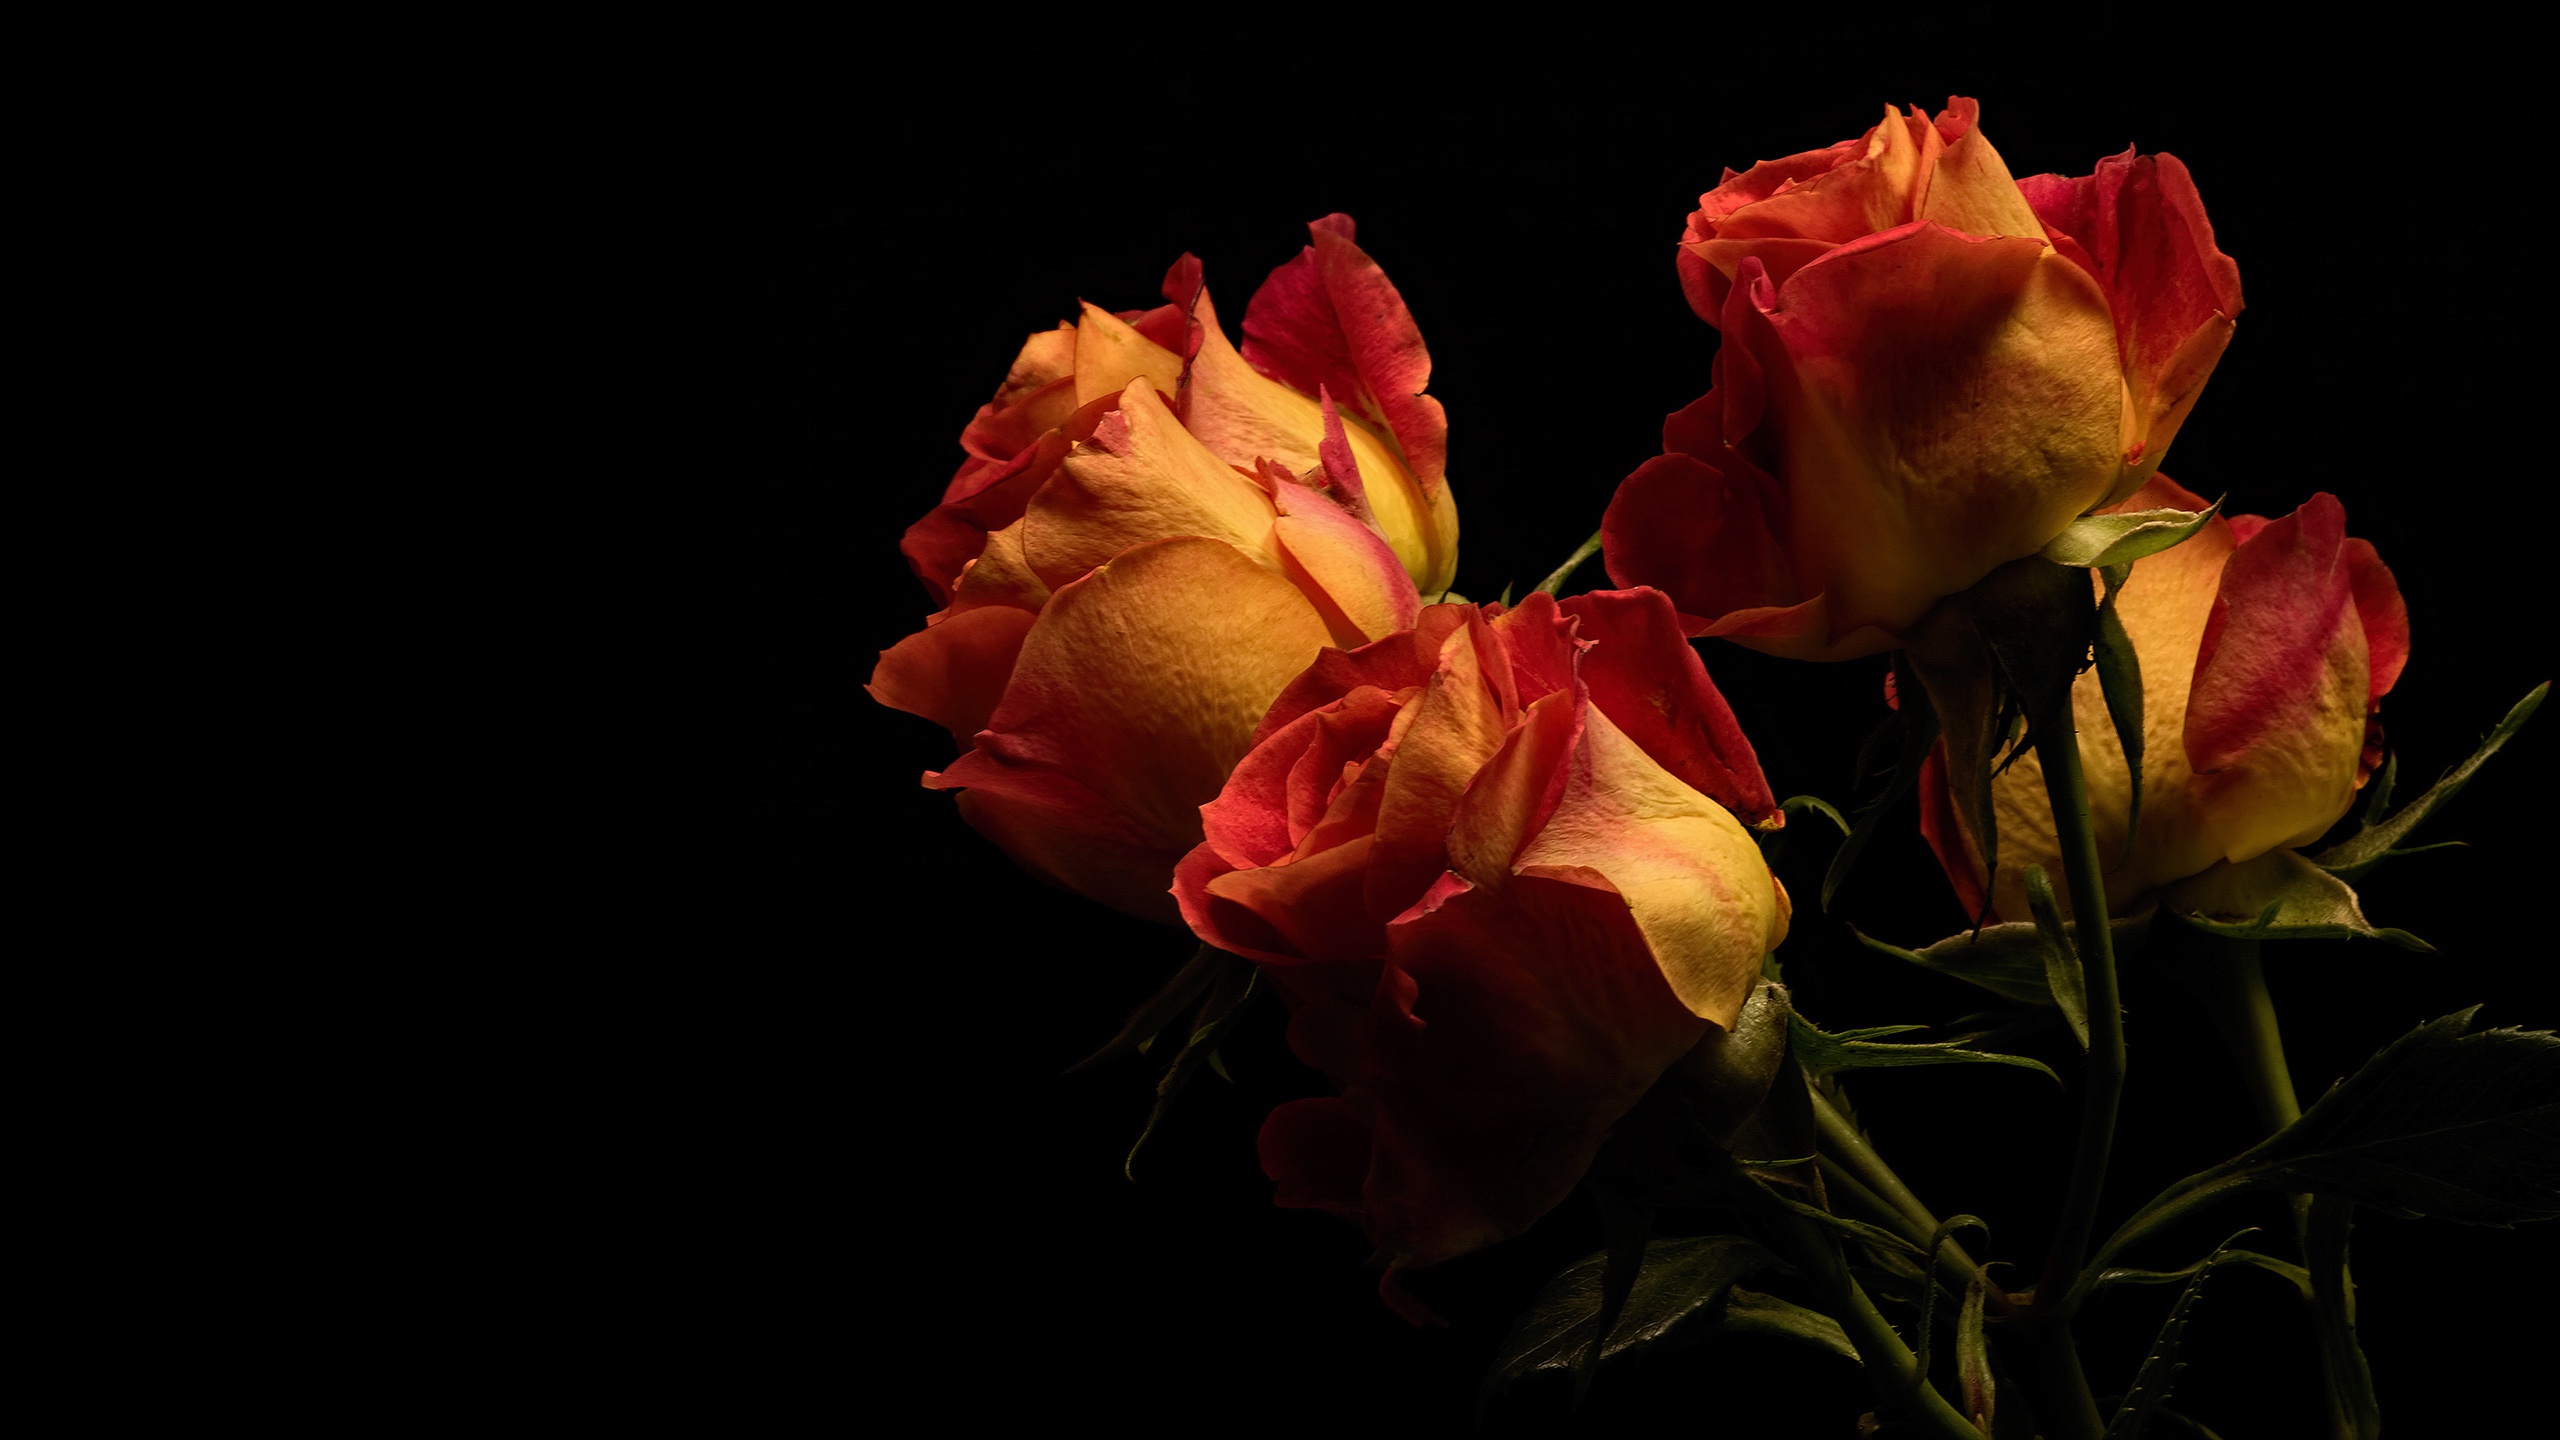 Красивая картинка с 7 розами